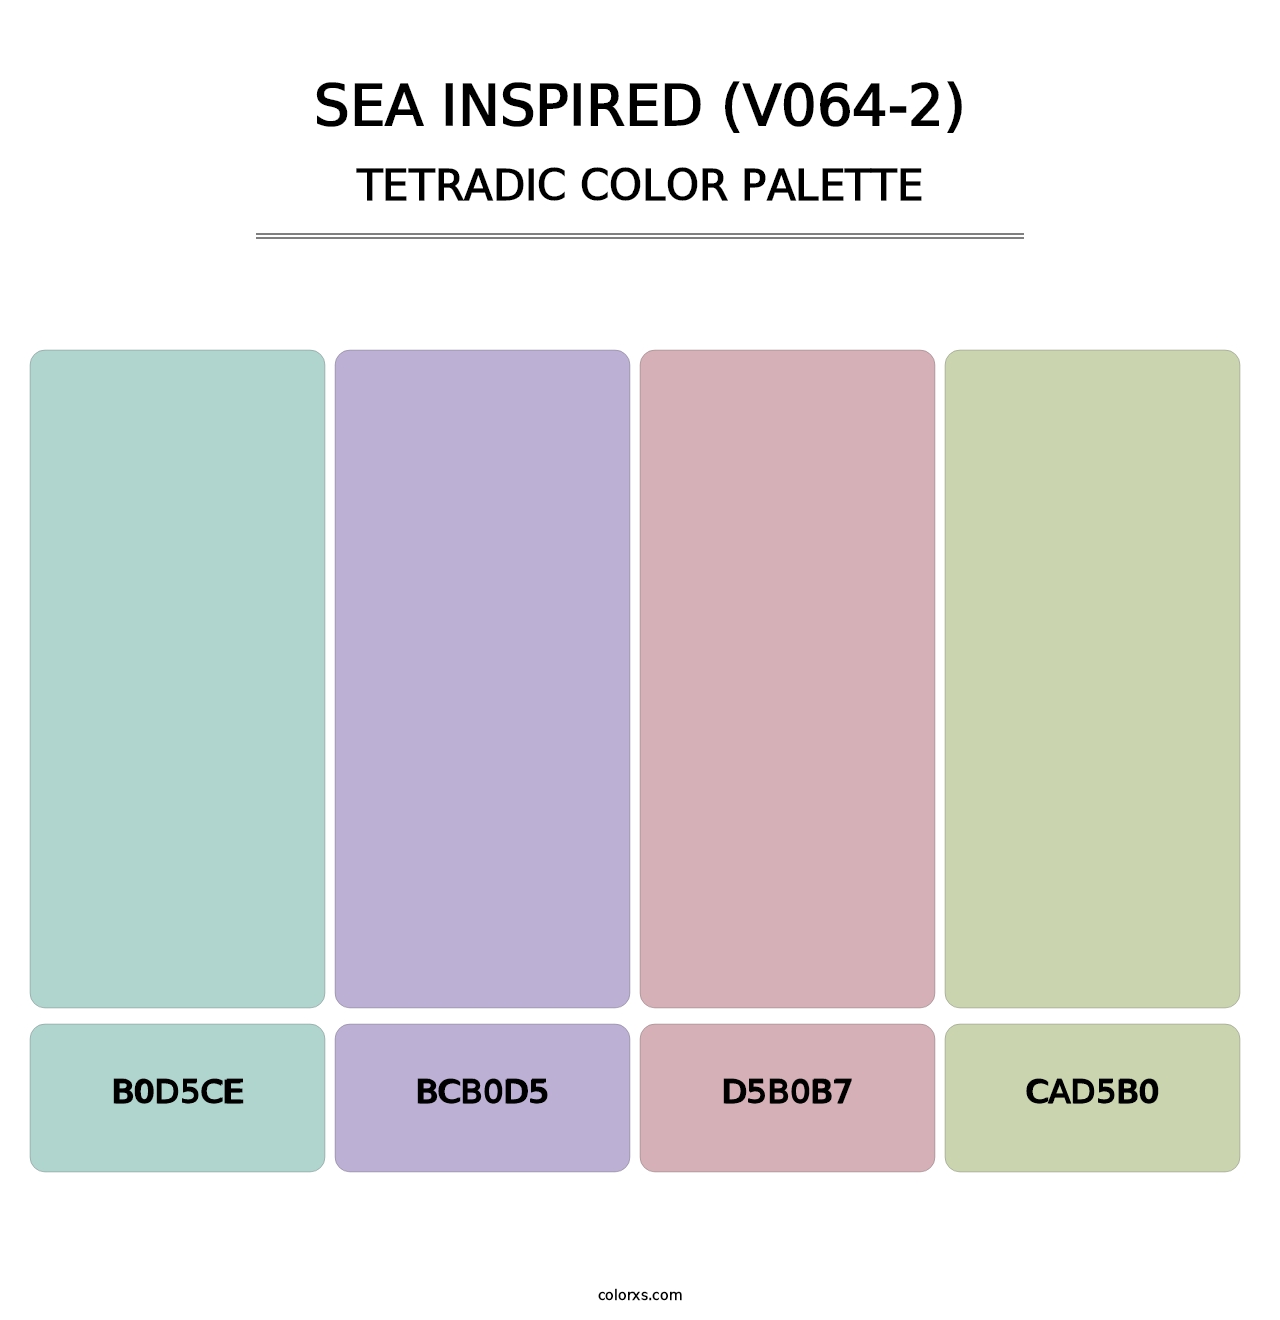 Sea Inspired (V064-2) - Tetradic Color Palette